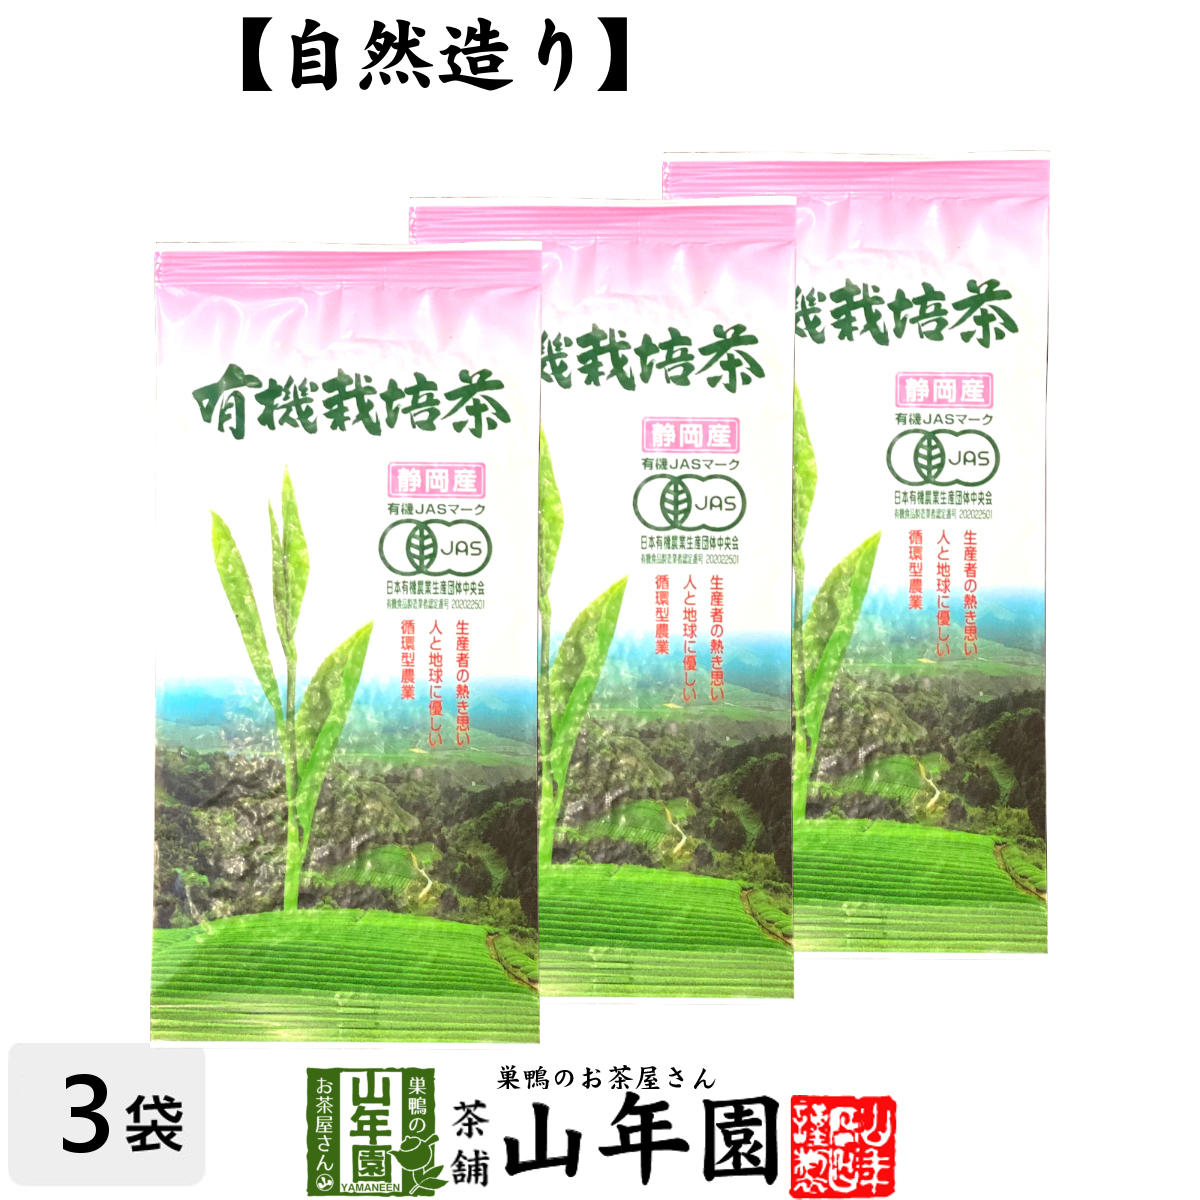 安心の定価販売 有機栽培茶使用の茶 天然の息吹き 100g×3袋セット メール便送料無料 静岡茶 農薬不使用のお茶 